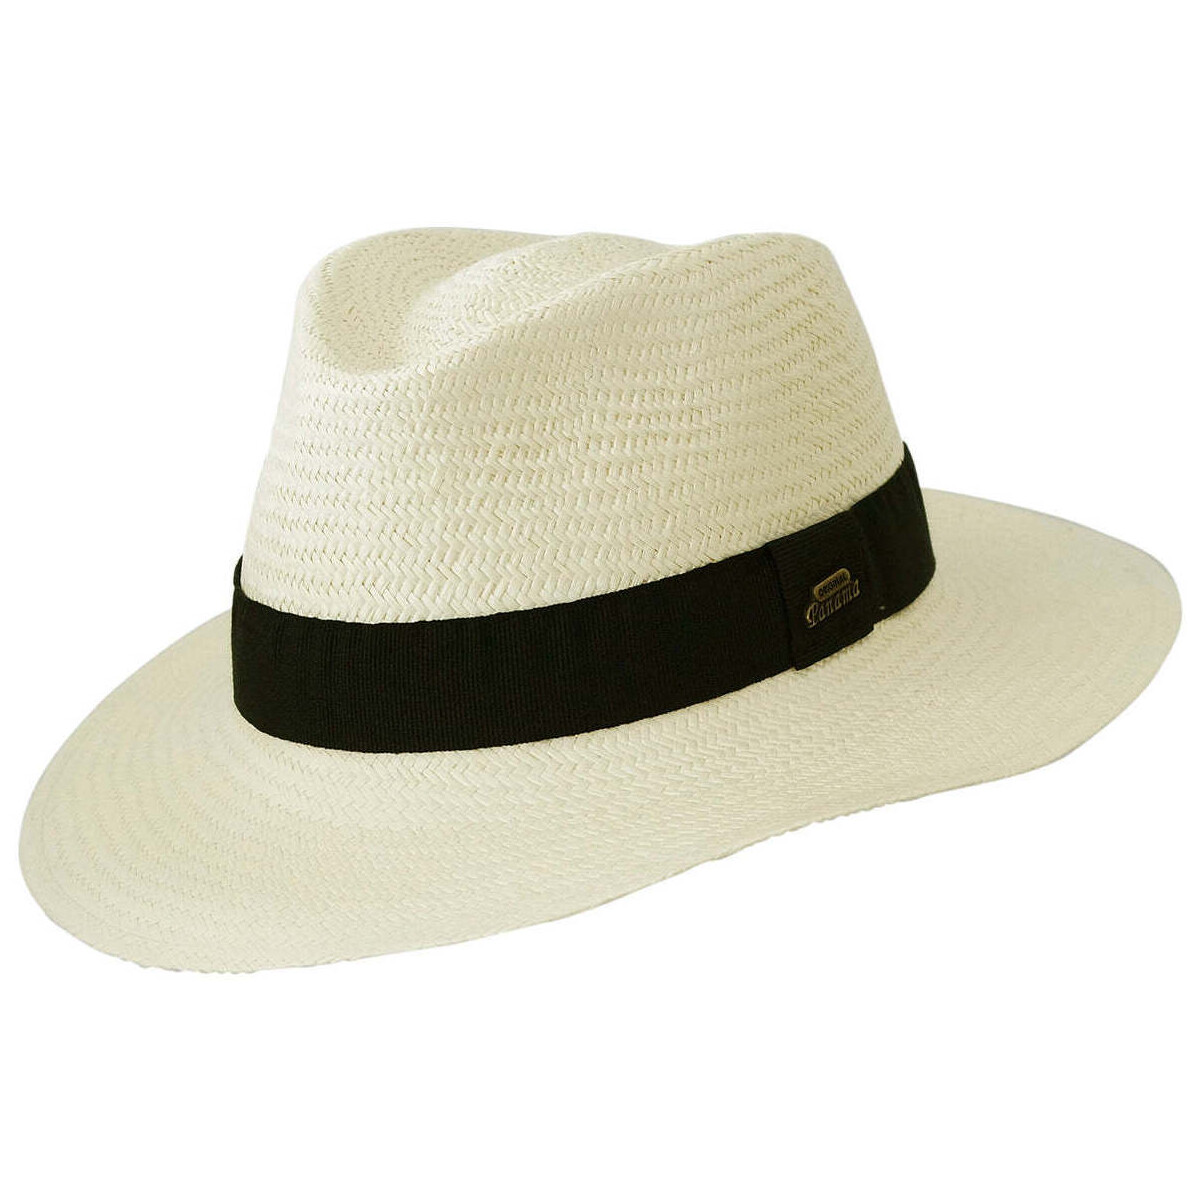 Accessoires textile Chapeaux Chapeau-Tendance Véritable chapeau panama naturel T61 Blanc